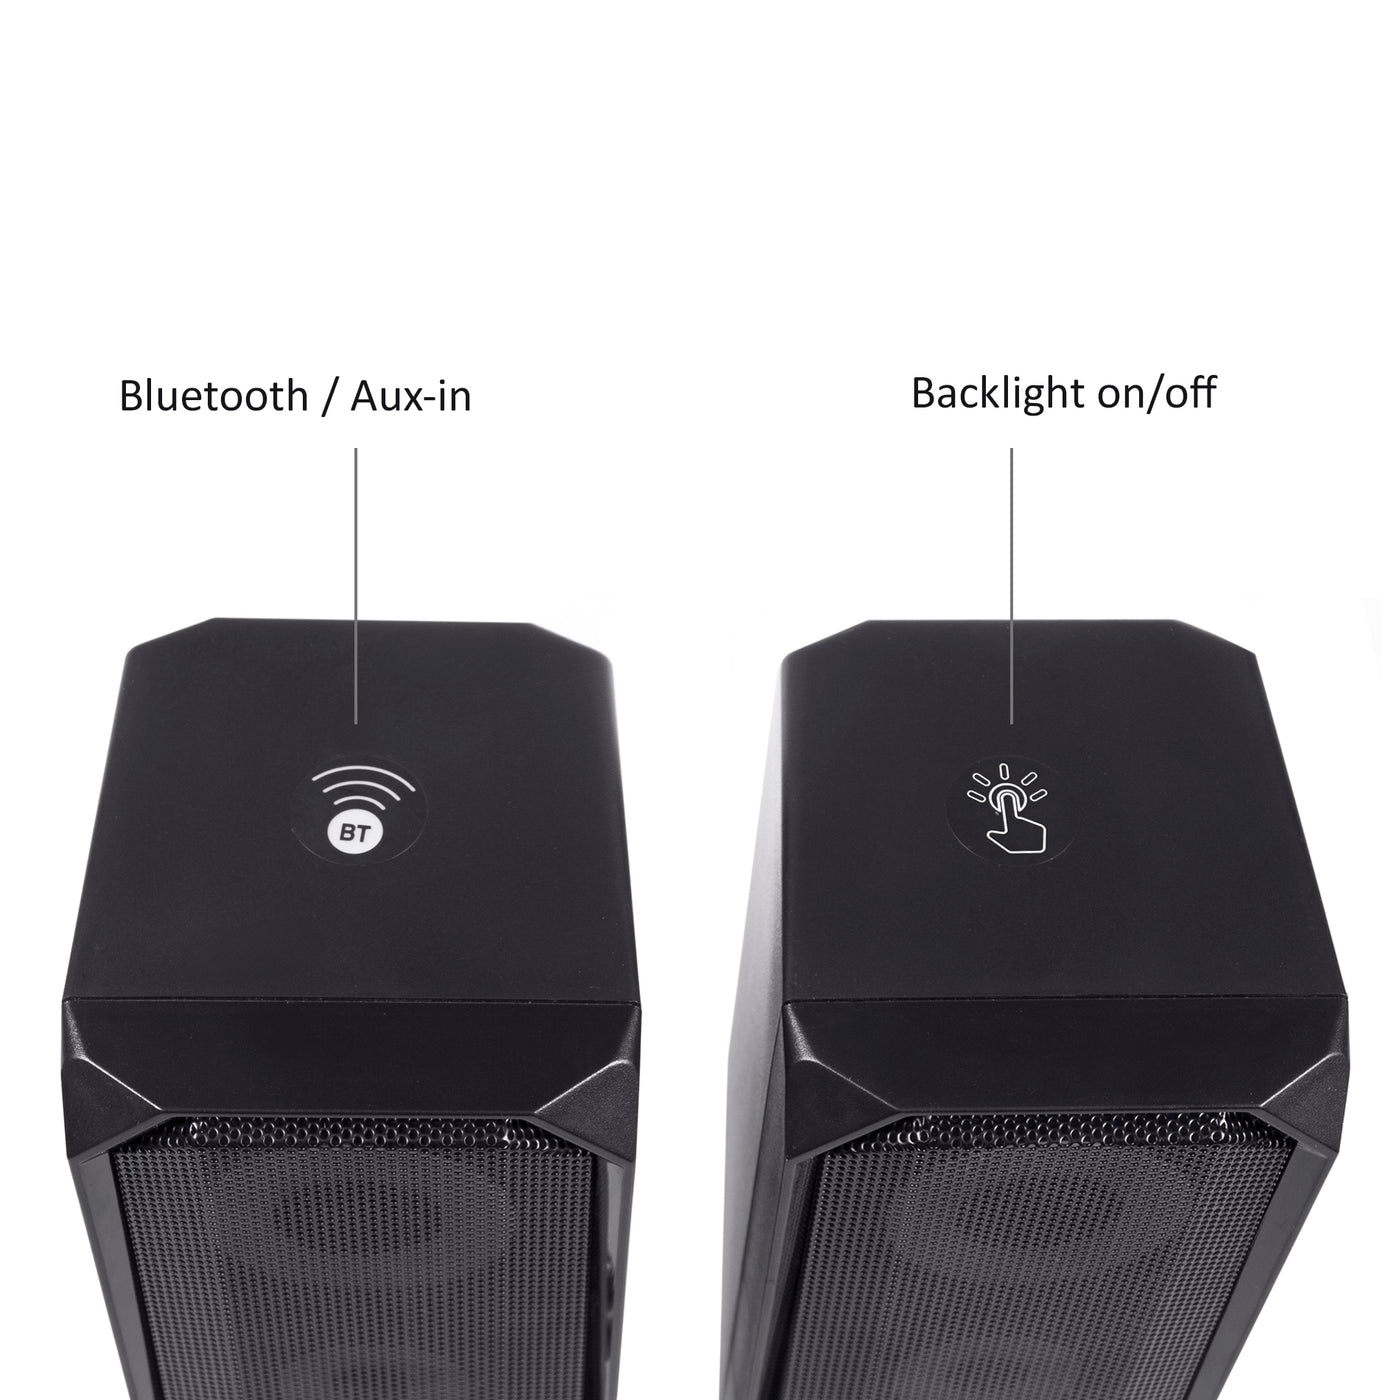 Głośniki komputerowe bluetooth 5.0, 3.5mm mini jack, USB 5v Audiocore AC845 czarne moc 6W - sterowanie dotykowe